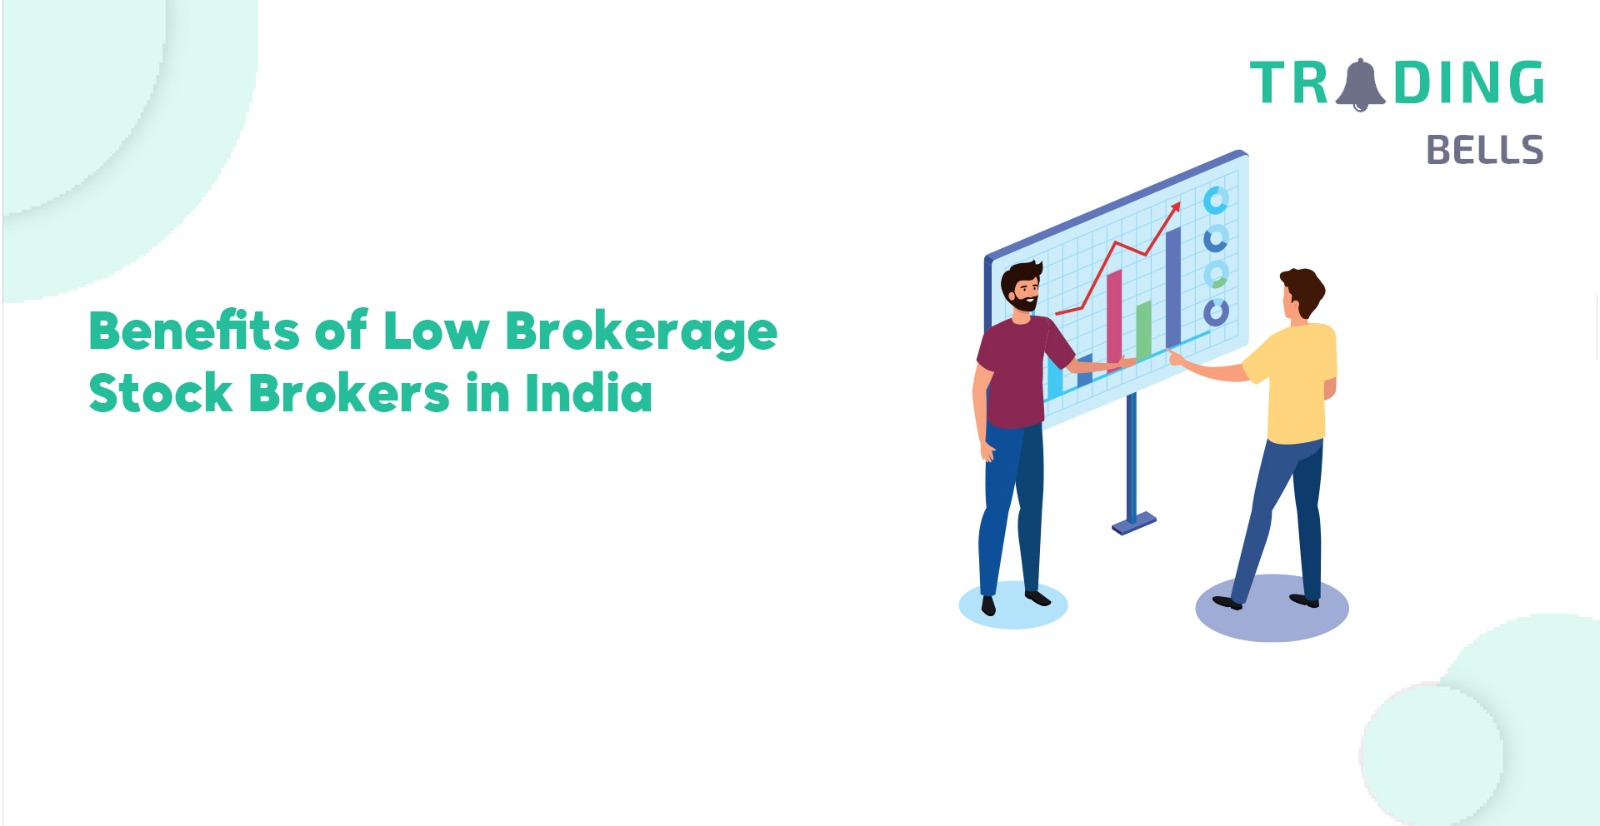 Benefits of Low Brokerage Stock Brokers in India